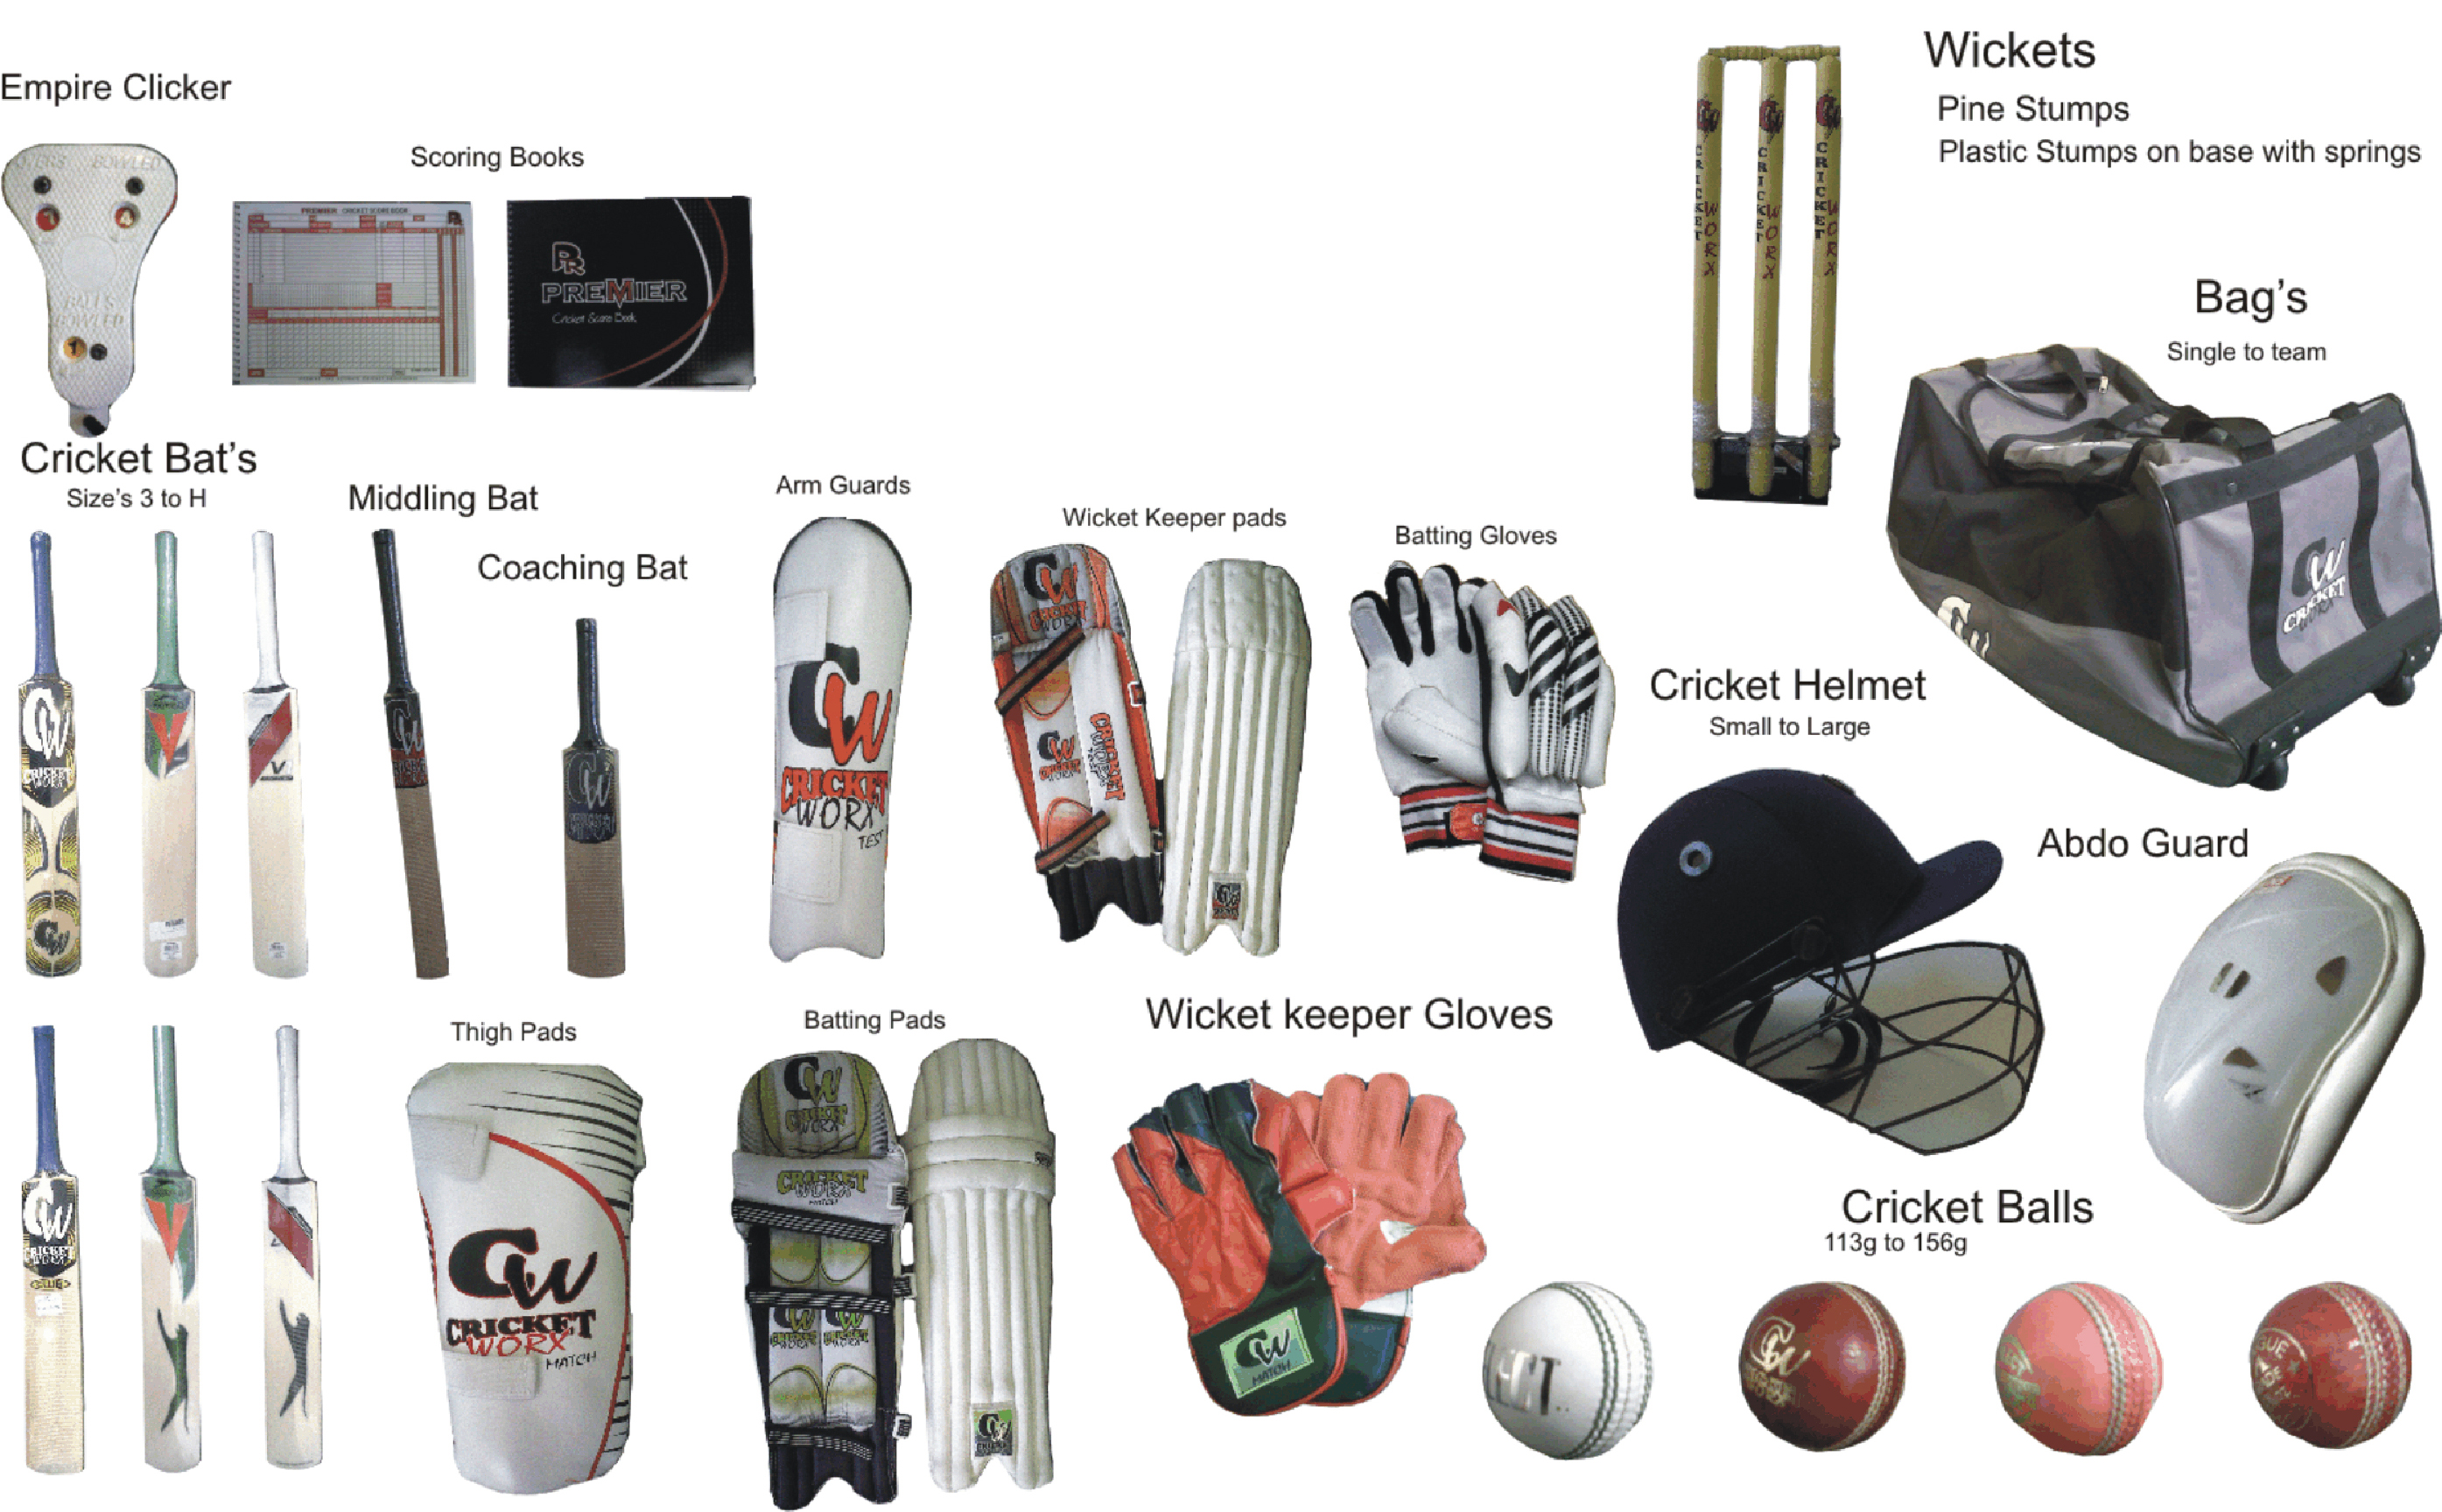 Cricket Uitrustingen En Pitch Types Genk Cricket Club